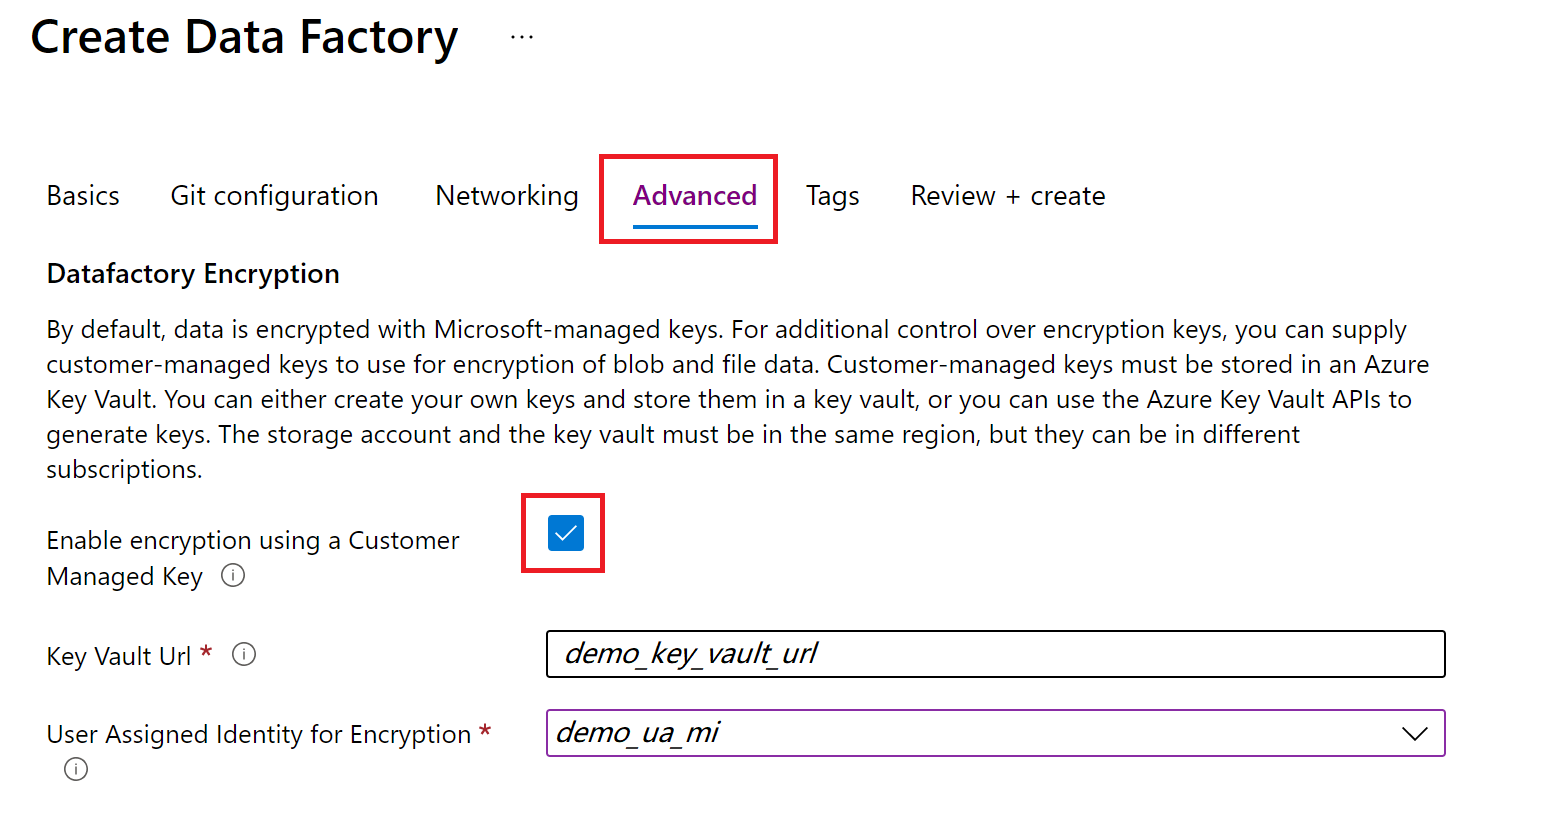 لقطة شاشة لعلامة التبويب Advanced لتجربة إنشاء مصنع البيانات في مدخل Microsoft Azure.